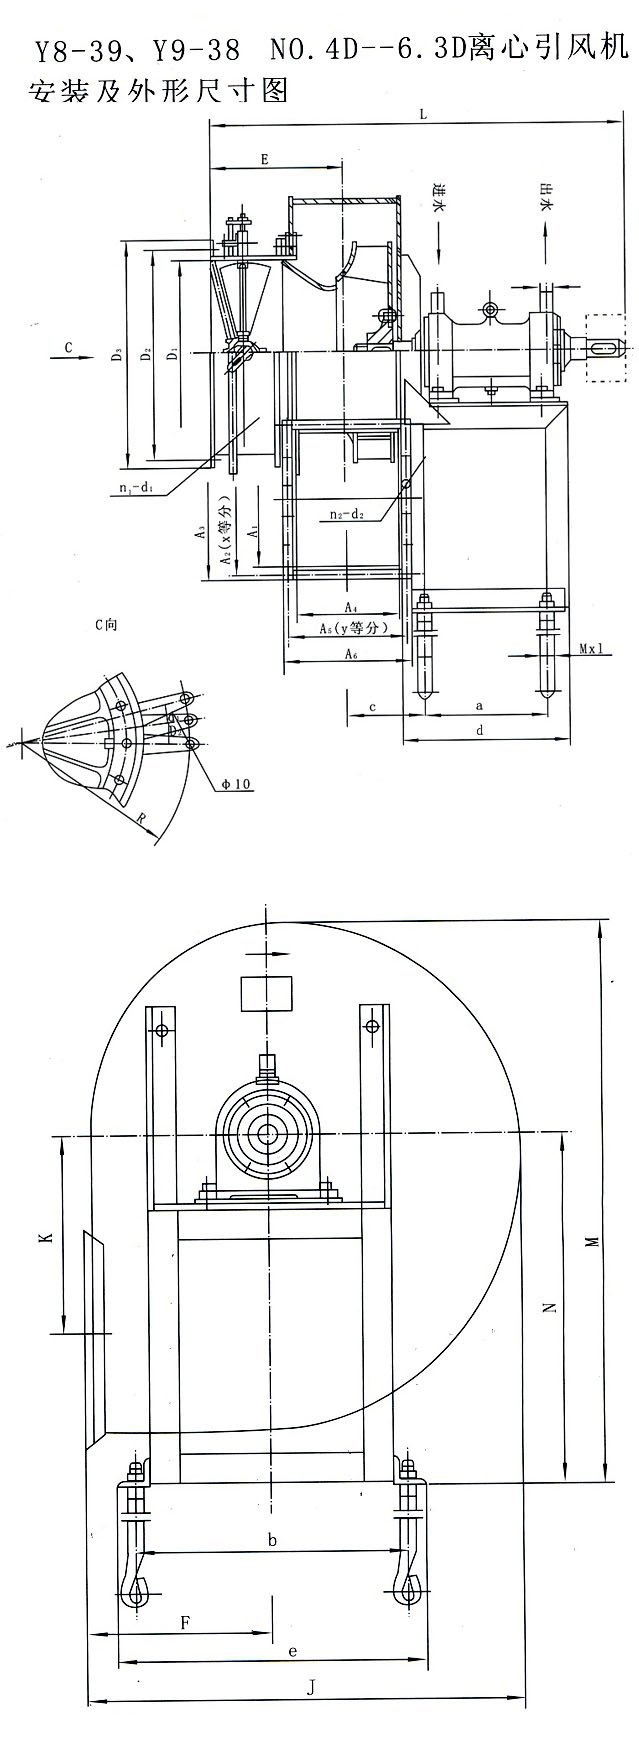  Y9-38.Y8-39锅炉引风机尺寸图